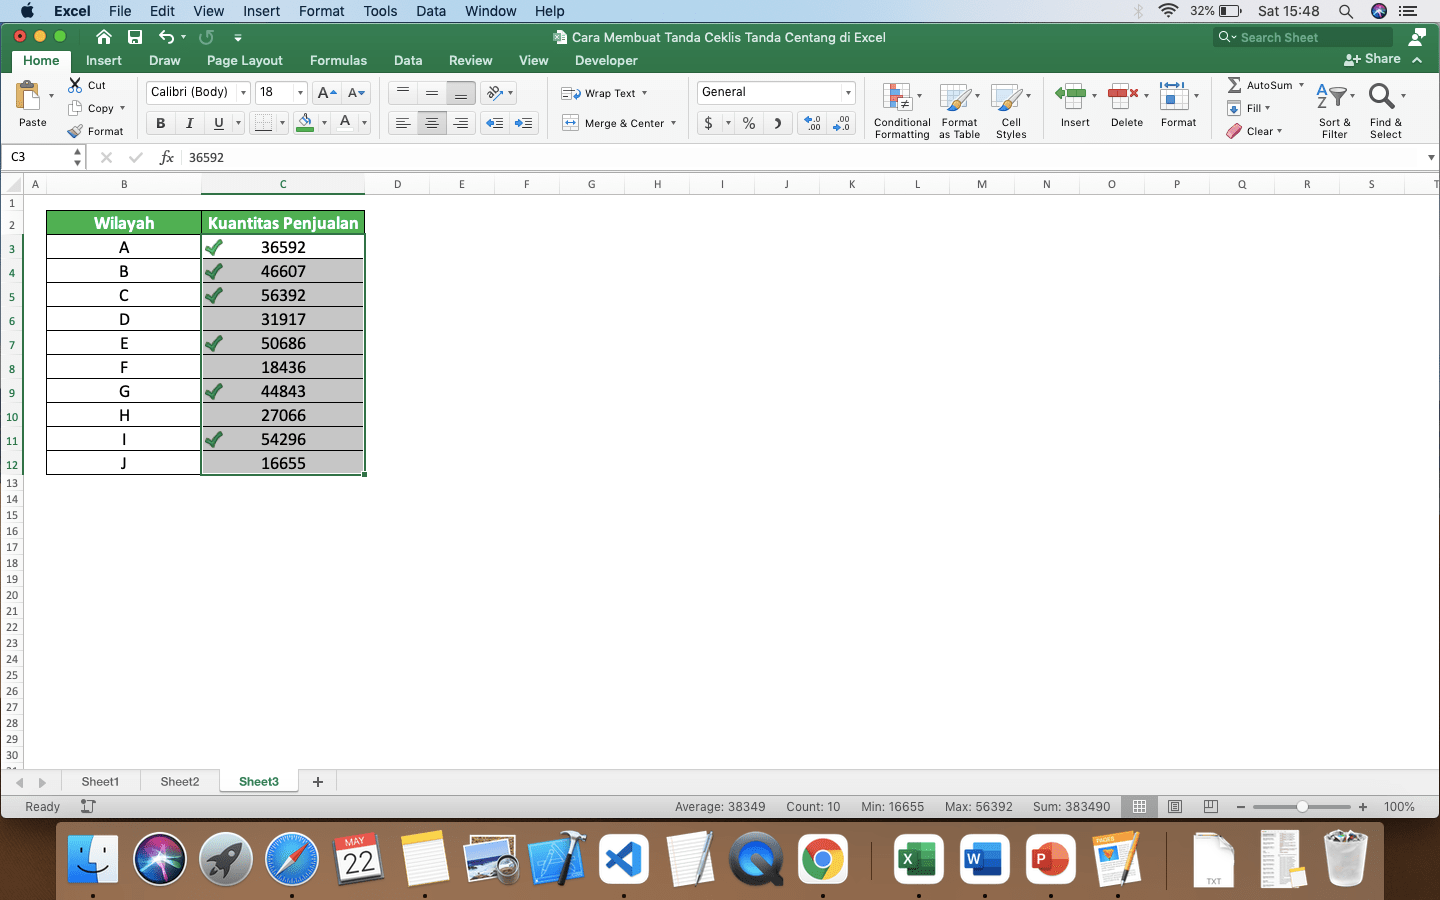 Cara Membuat Tanda Ceklis/Tanda Centang di Excel - Screenshot Contoh Hasil Cara Conditional Formatting untuk Memasukkan Tanda Ceklis/Centang di Excel